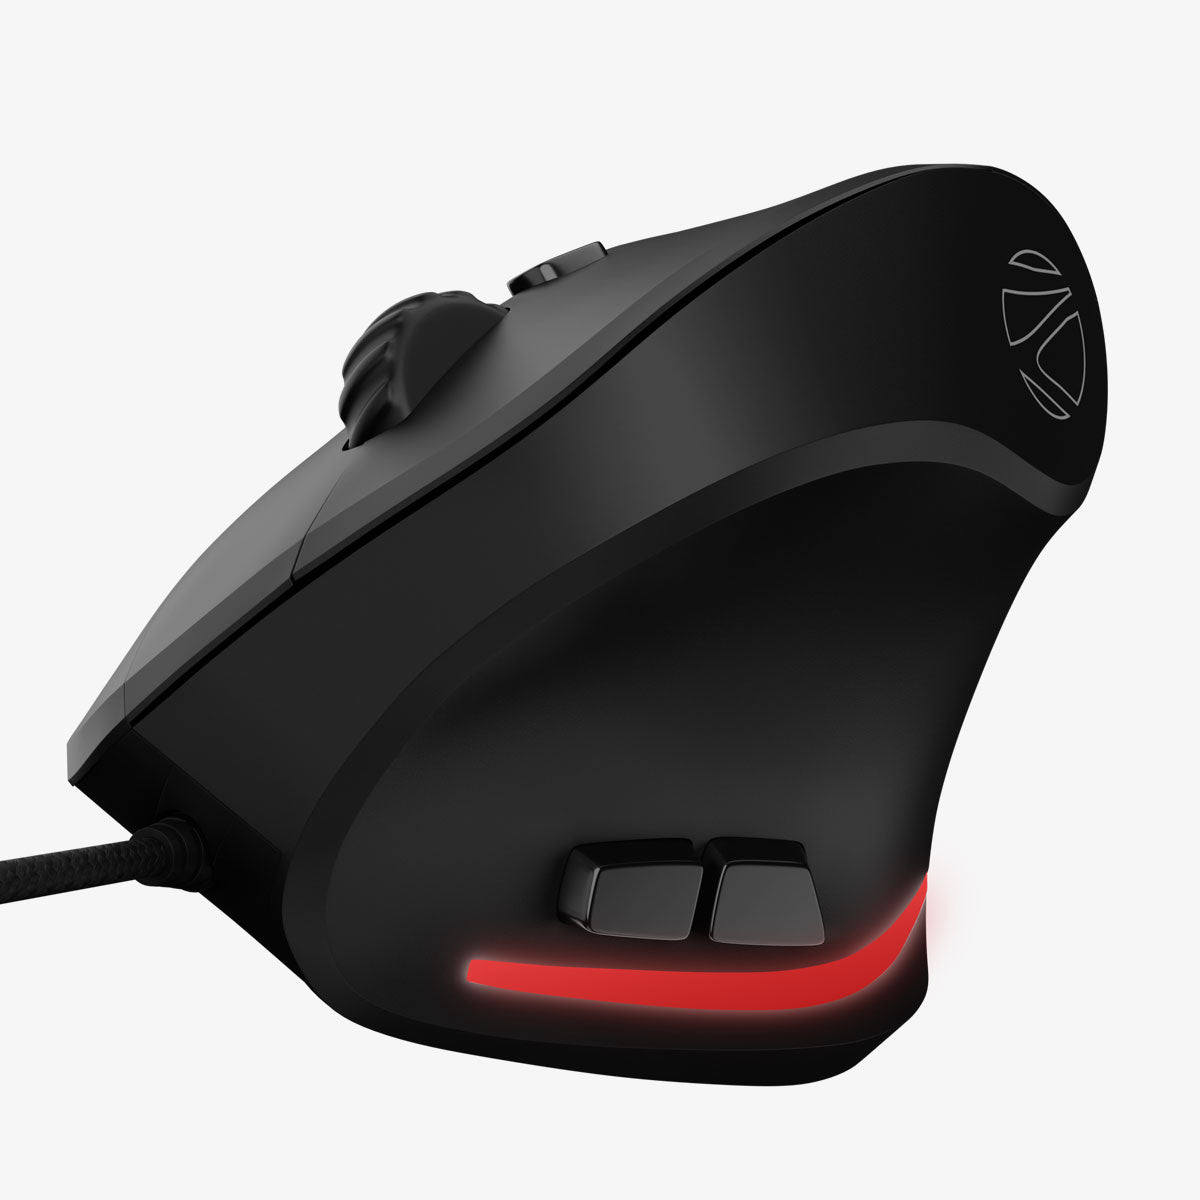 Zeb-Cozy - Premium Gaming Mouse - Zebronics